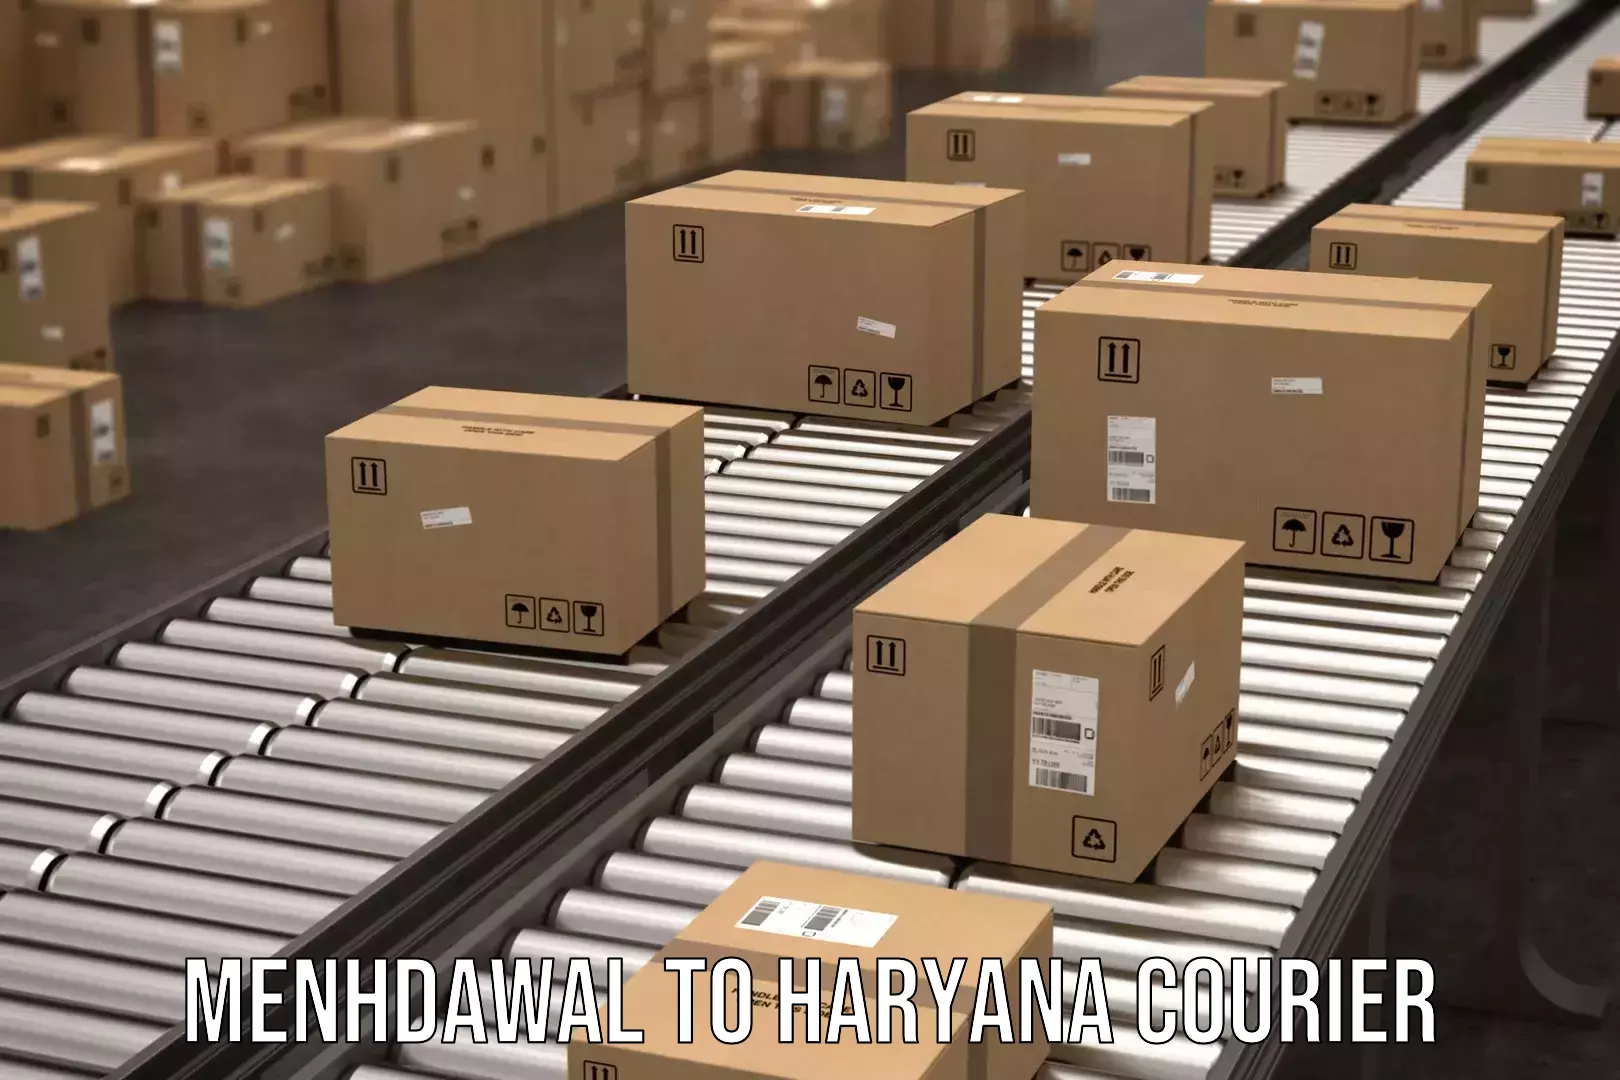 Door-to-door shipment Menhdawal to Abhimanyupur